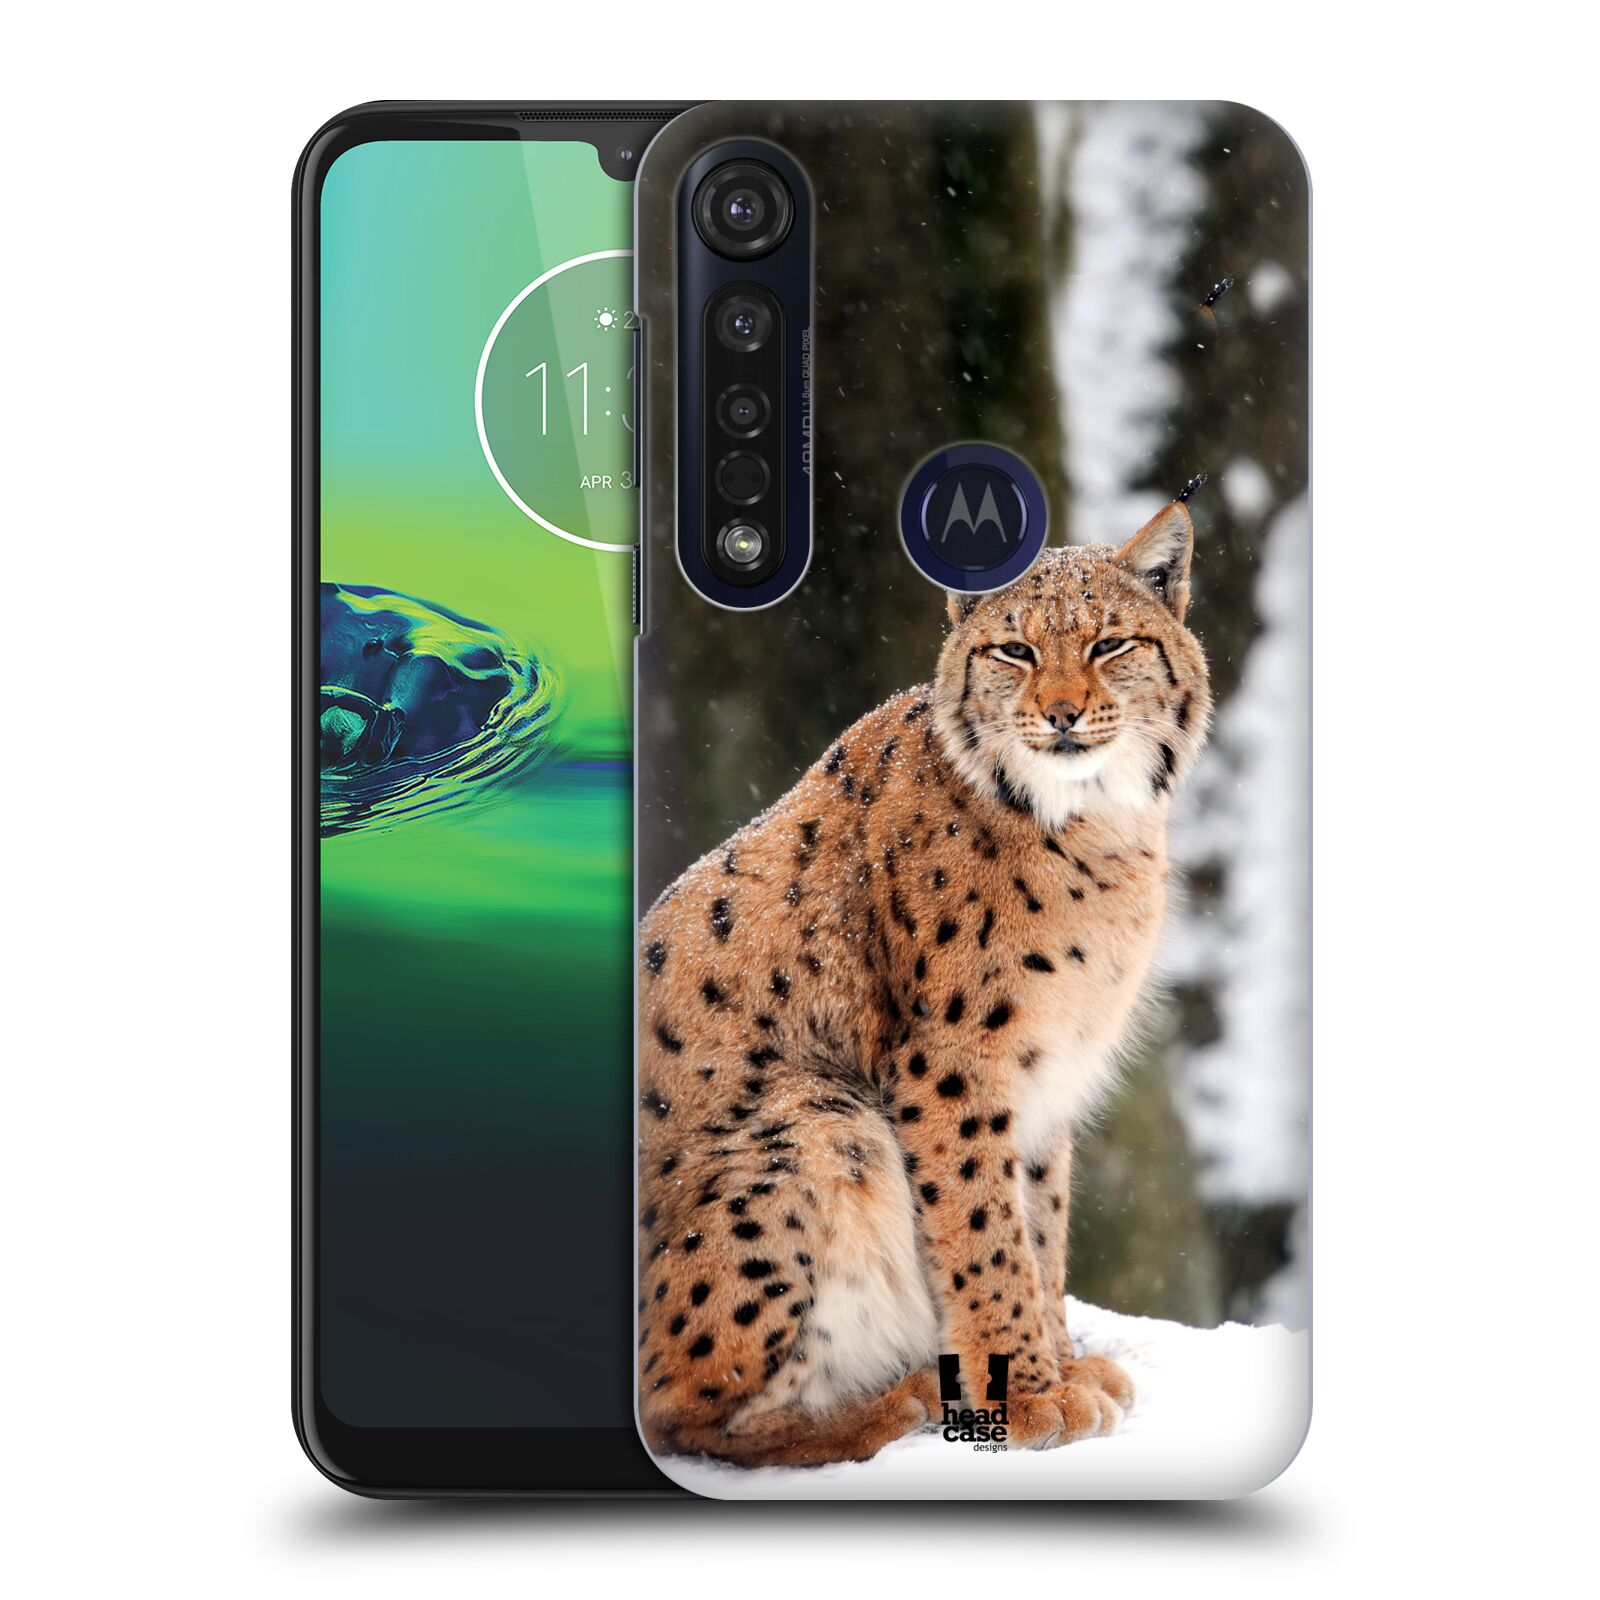 Pouzdro na mobil Motorola Moto G8 PLUS - HEAD CASE - vzor slavná zvířata foto rys